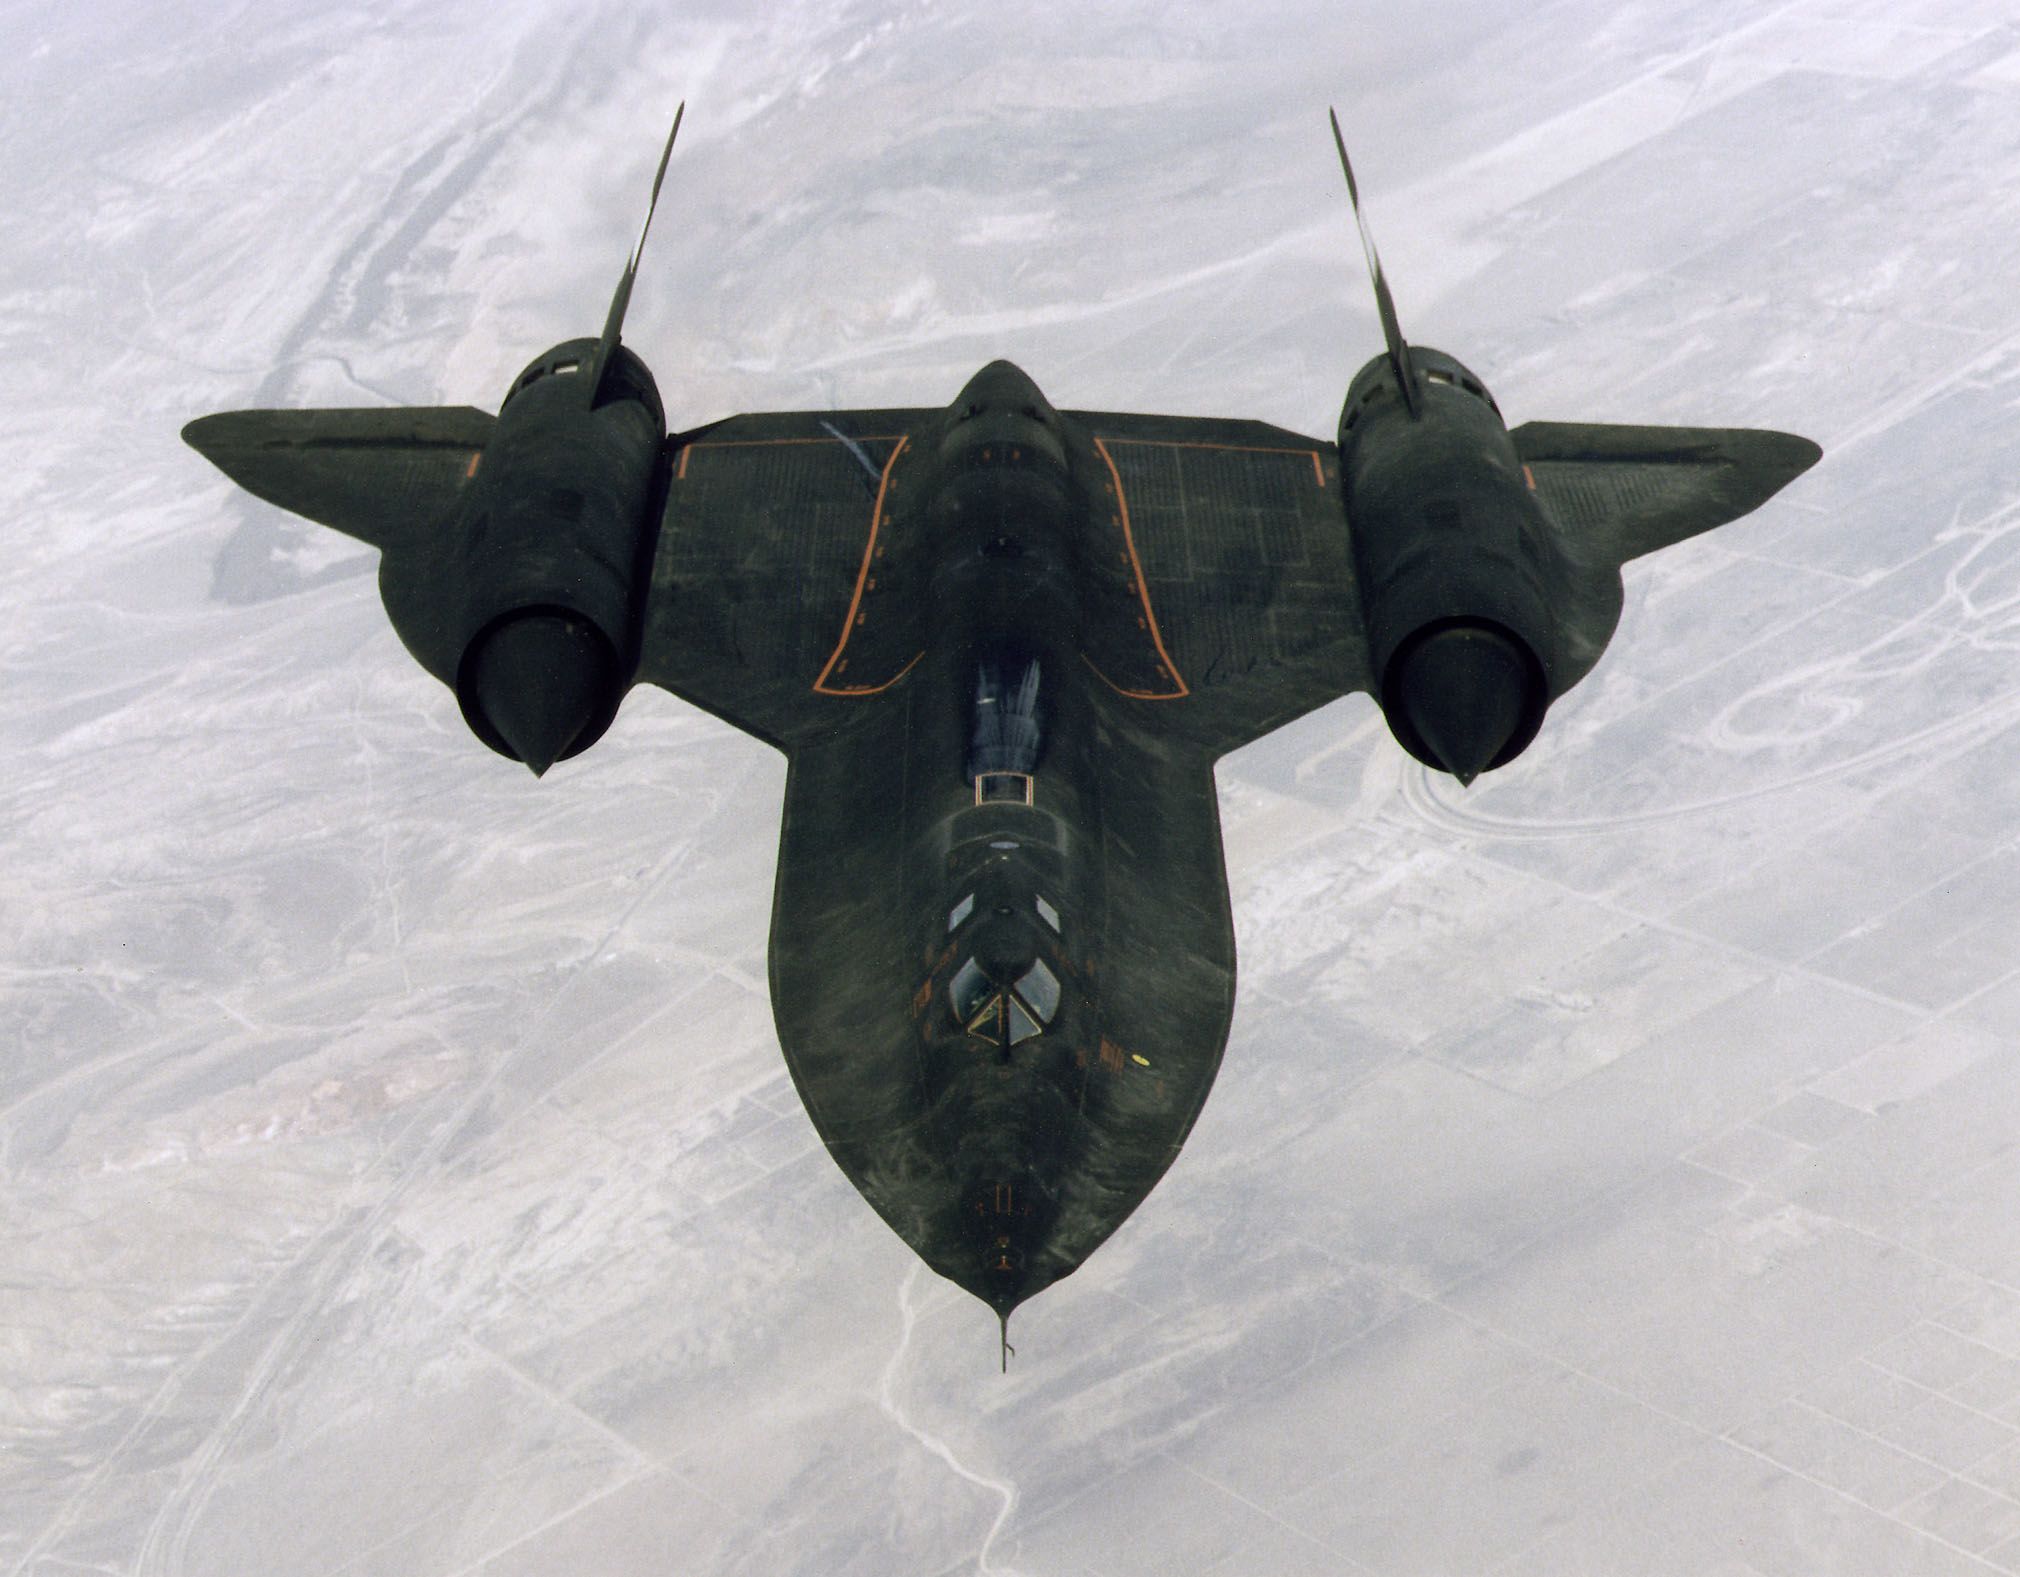 Sr-71 Blackbird: The Cold War Spy Plane That'S Still The World'S Fastest  Airplane | Cnn